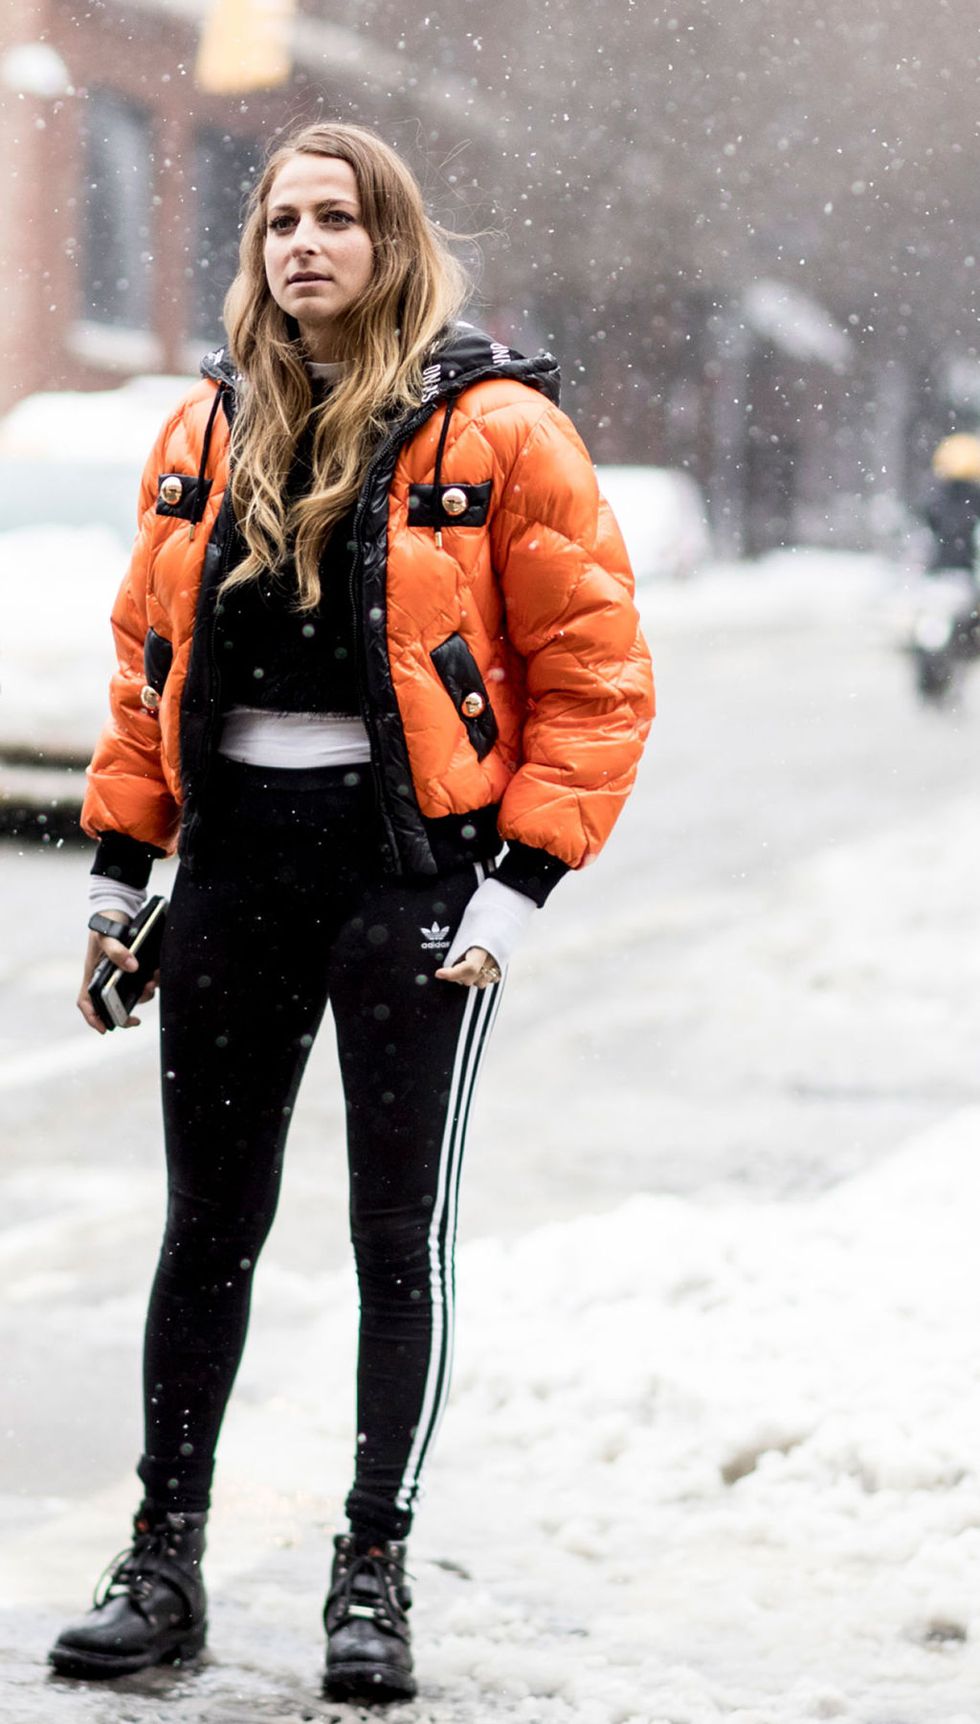 La New York Fashion Week apre i battenti sotto una bufera di neve, anche se questo non ha scoraggiato il popolo della moda arrivato nella Grande Mela con le valigie cariche di look super cool: come non perdere lo stile con i look da neve.